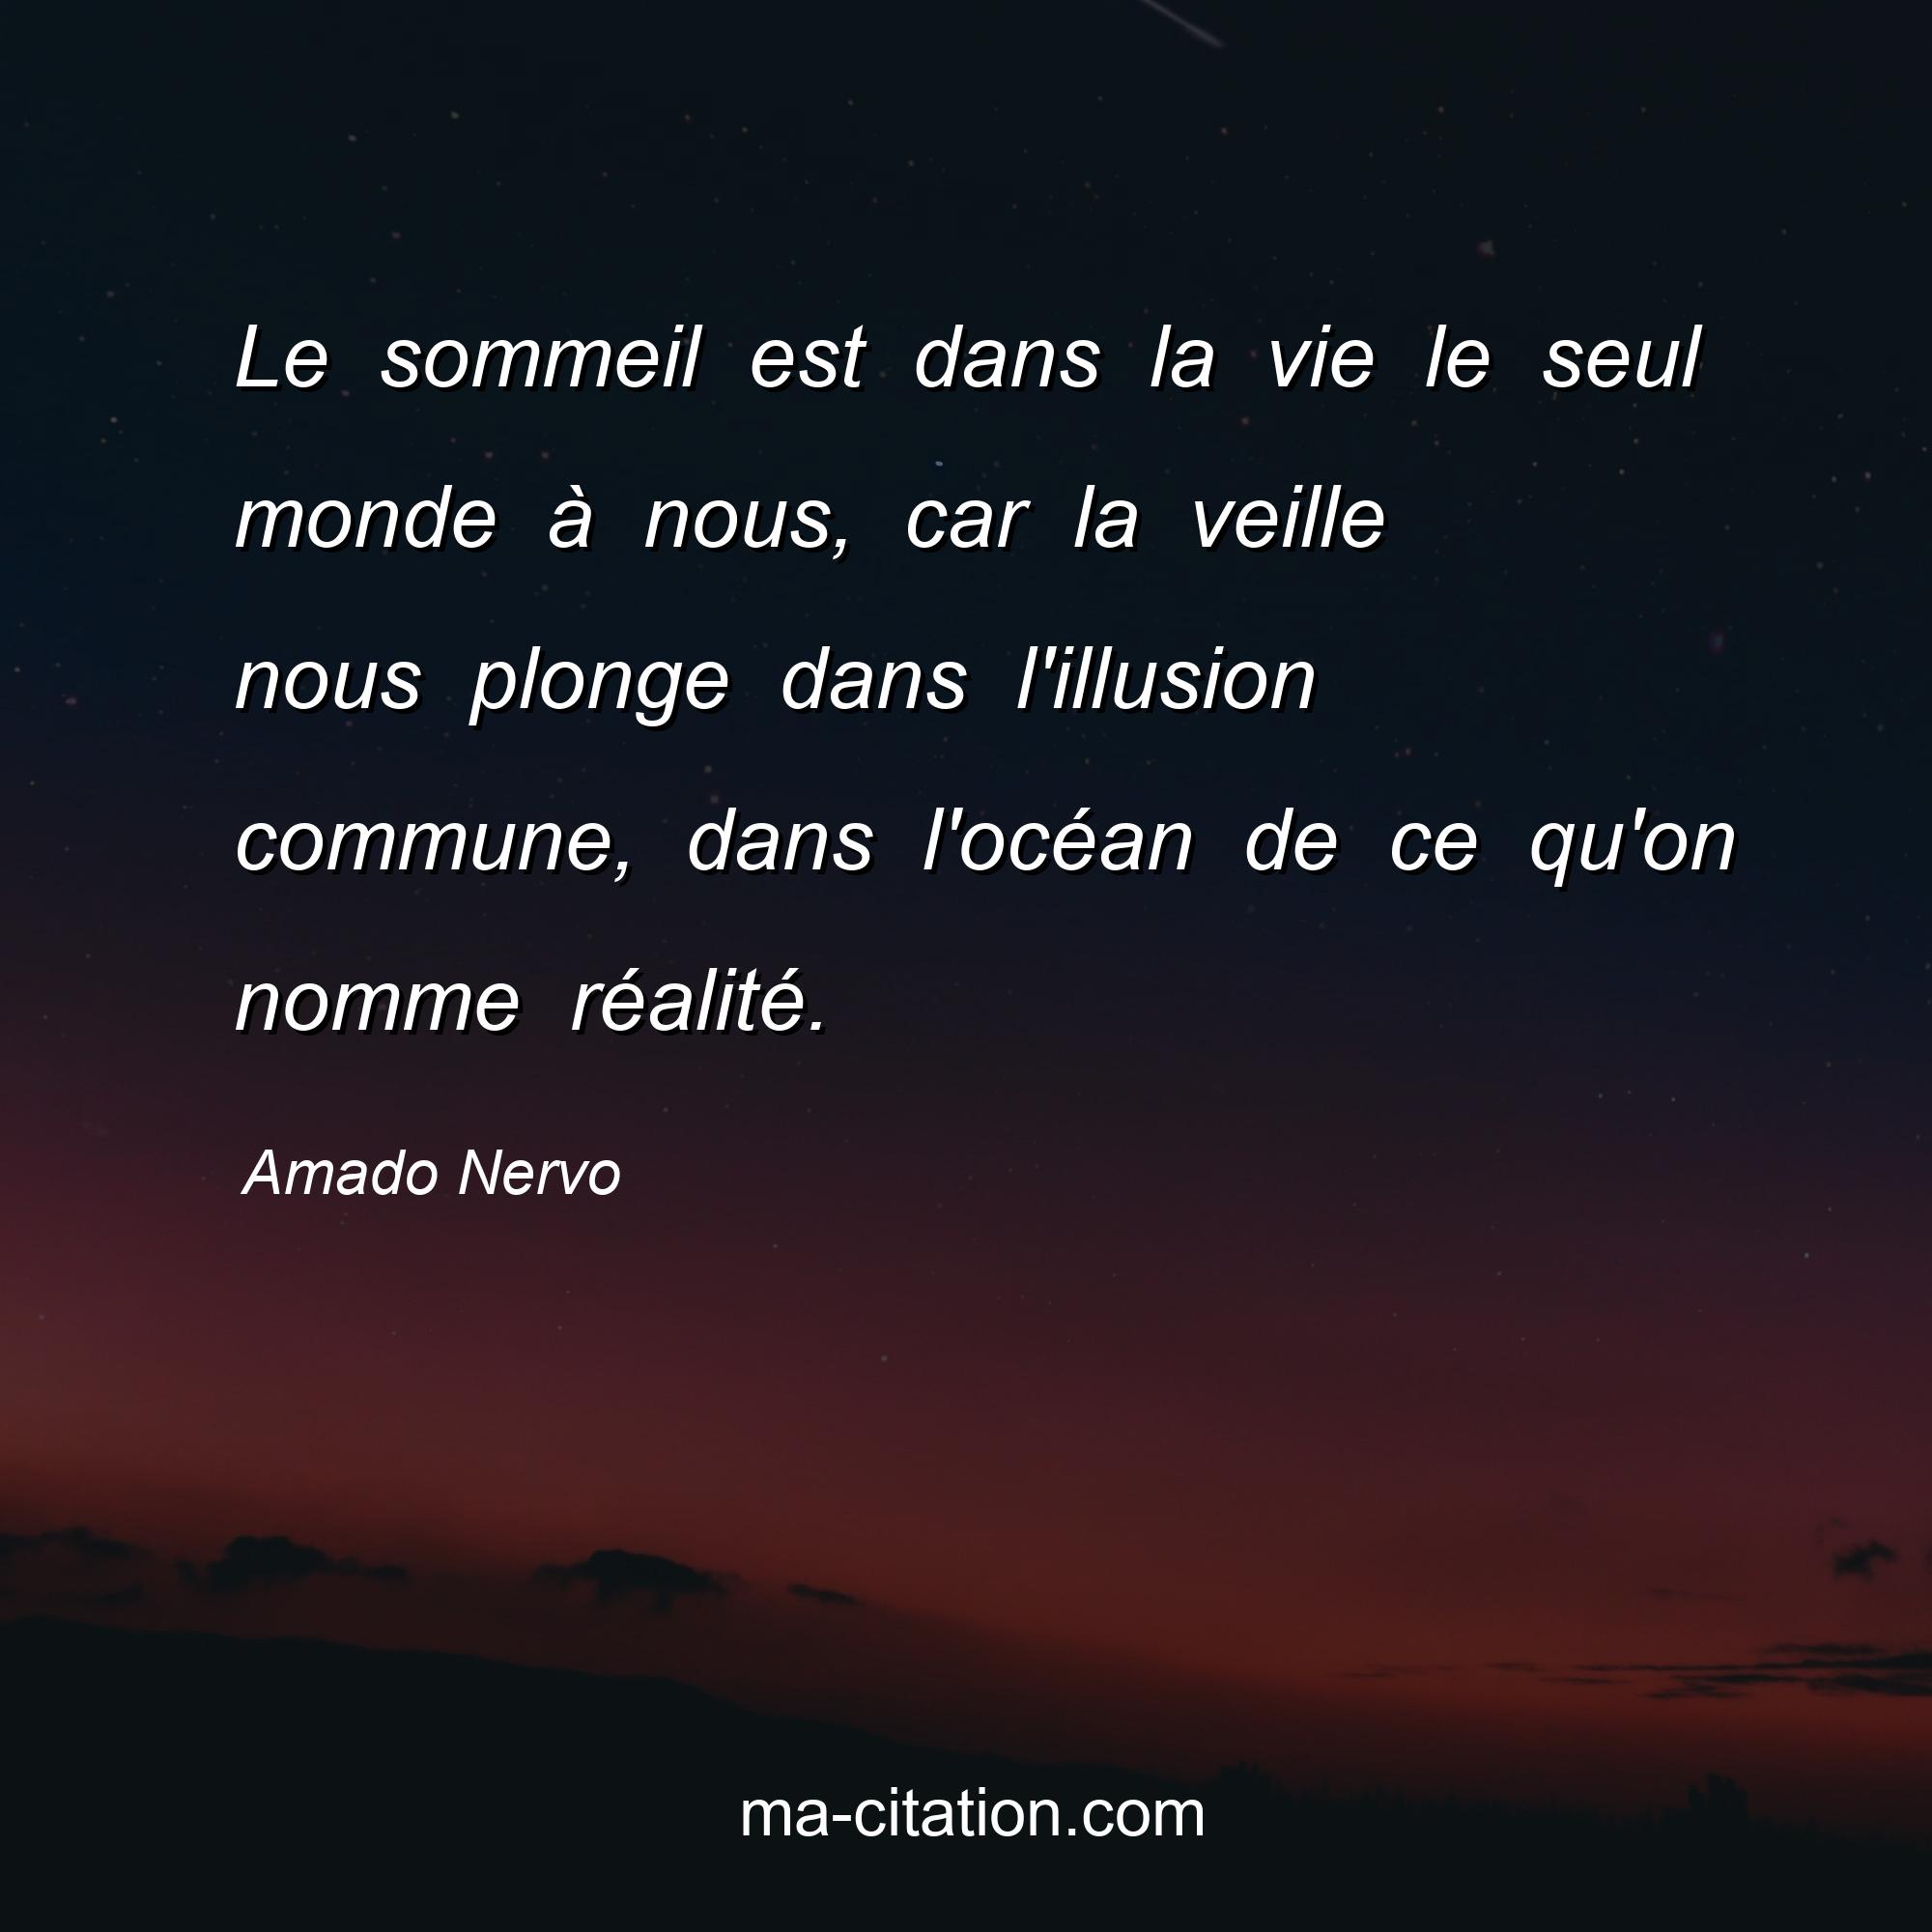 Amado Nervo : Le sommeil est dans la vie le seul monde à nous, car la veille nous plonge dans l'illusion commune, dans l'océan de ce qu'on nomme réalité.